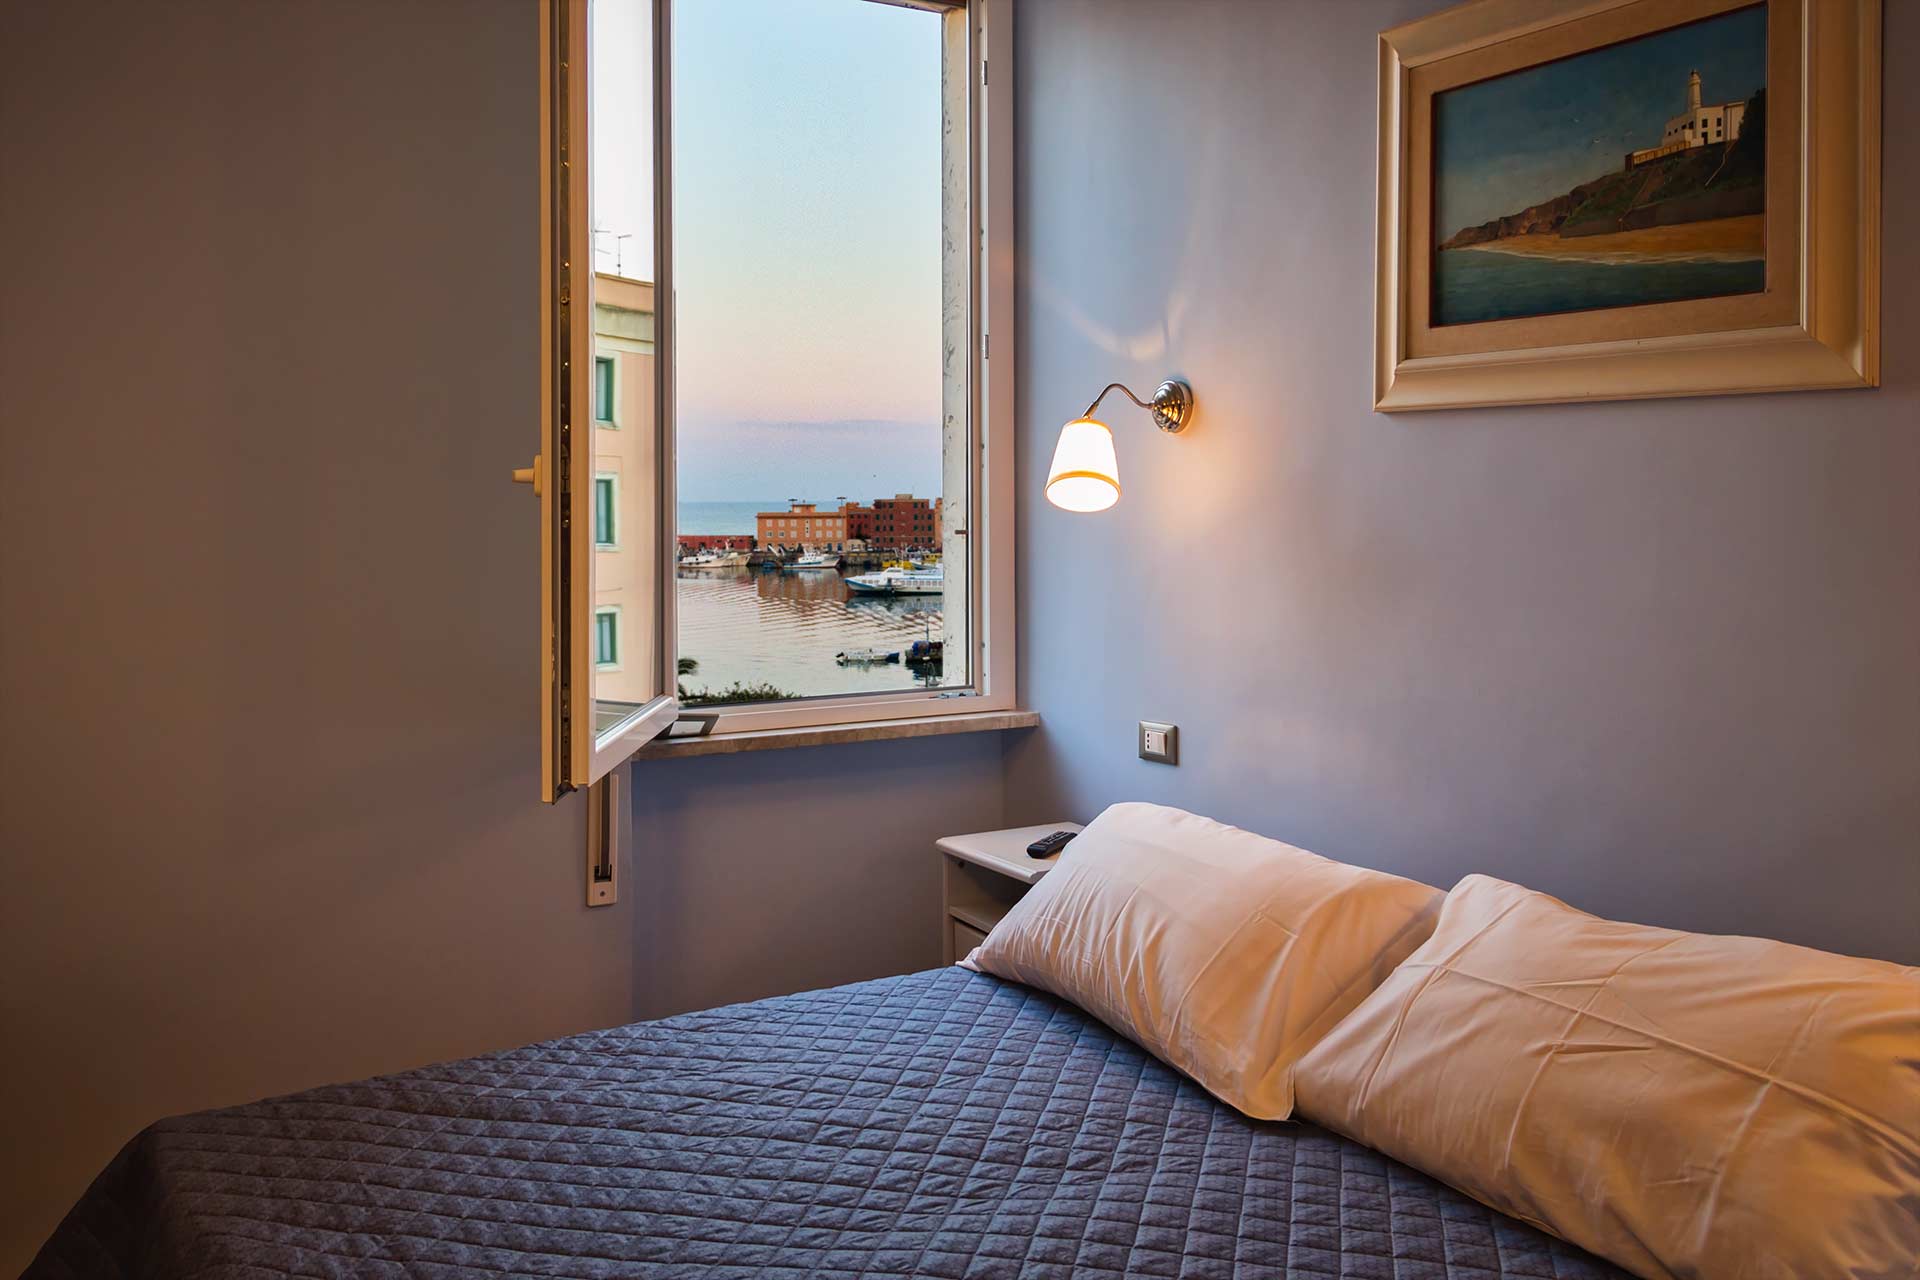 Bed And Breakfast Anzio direttamente sul mare - vista da una stanza